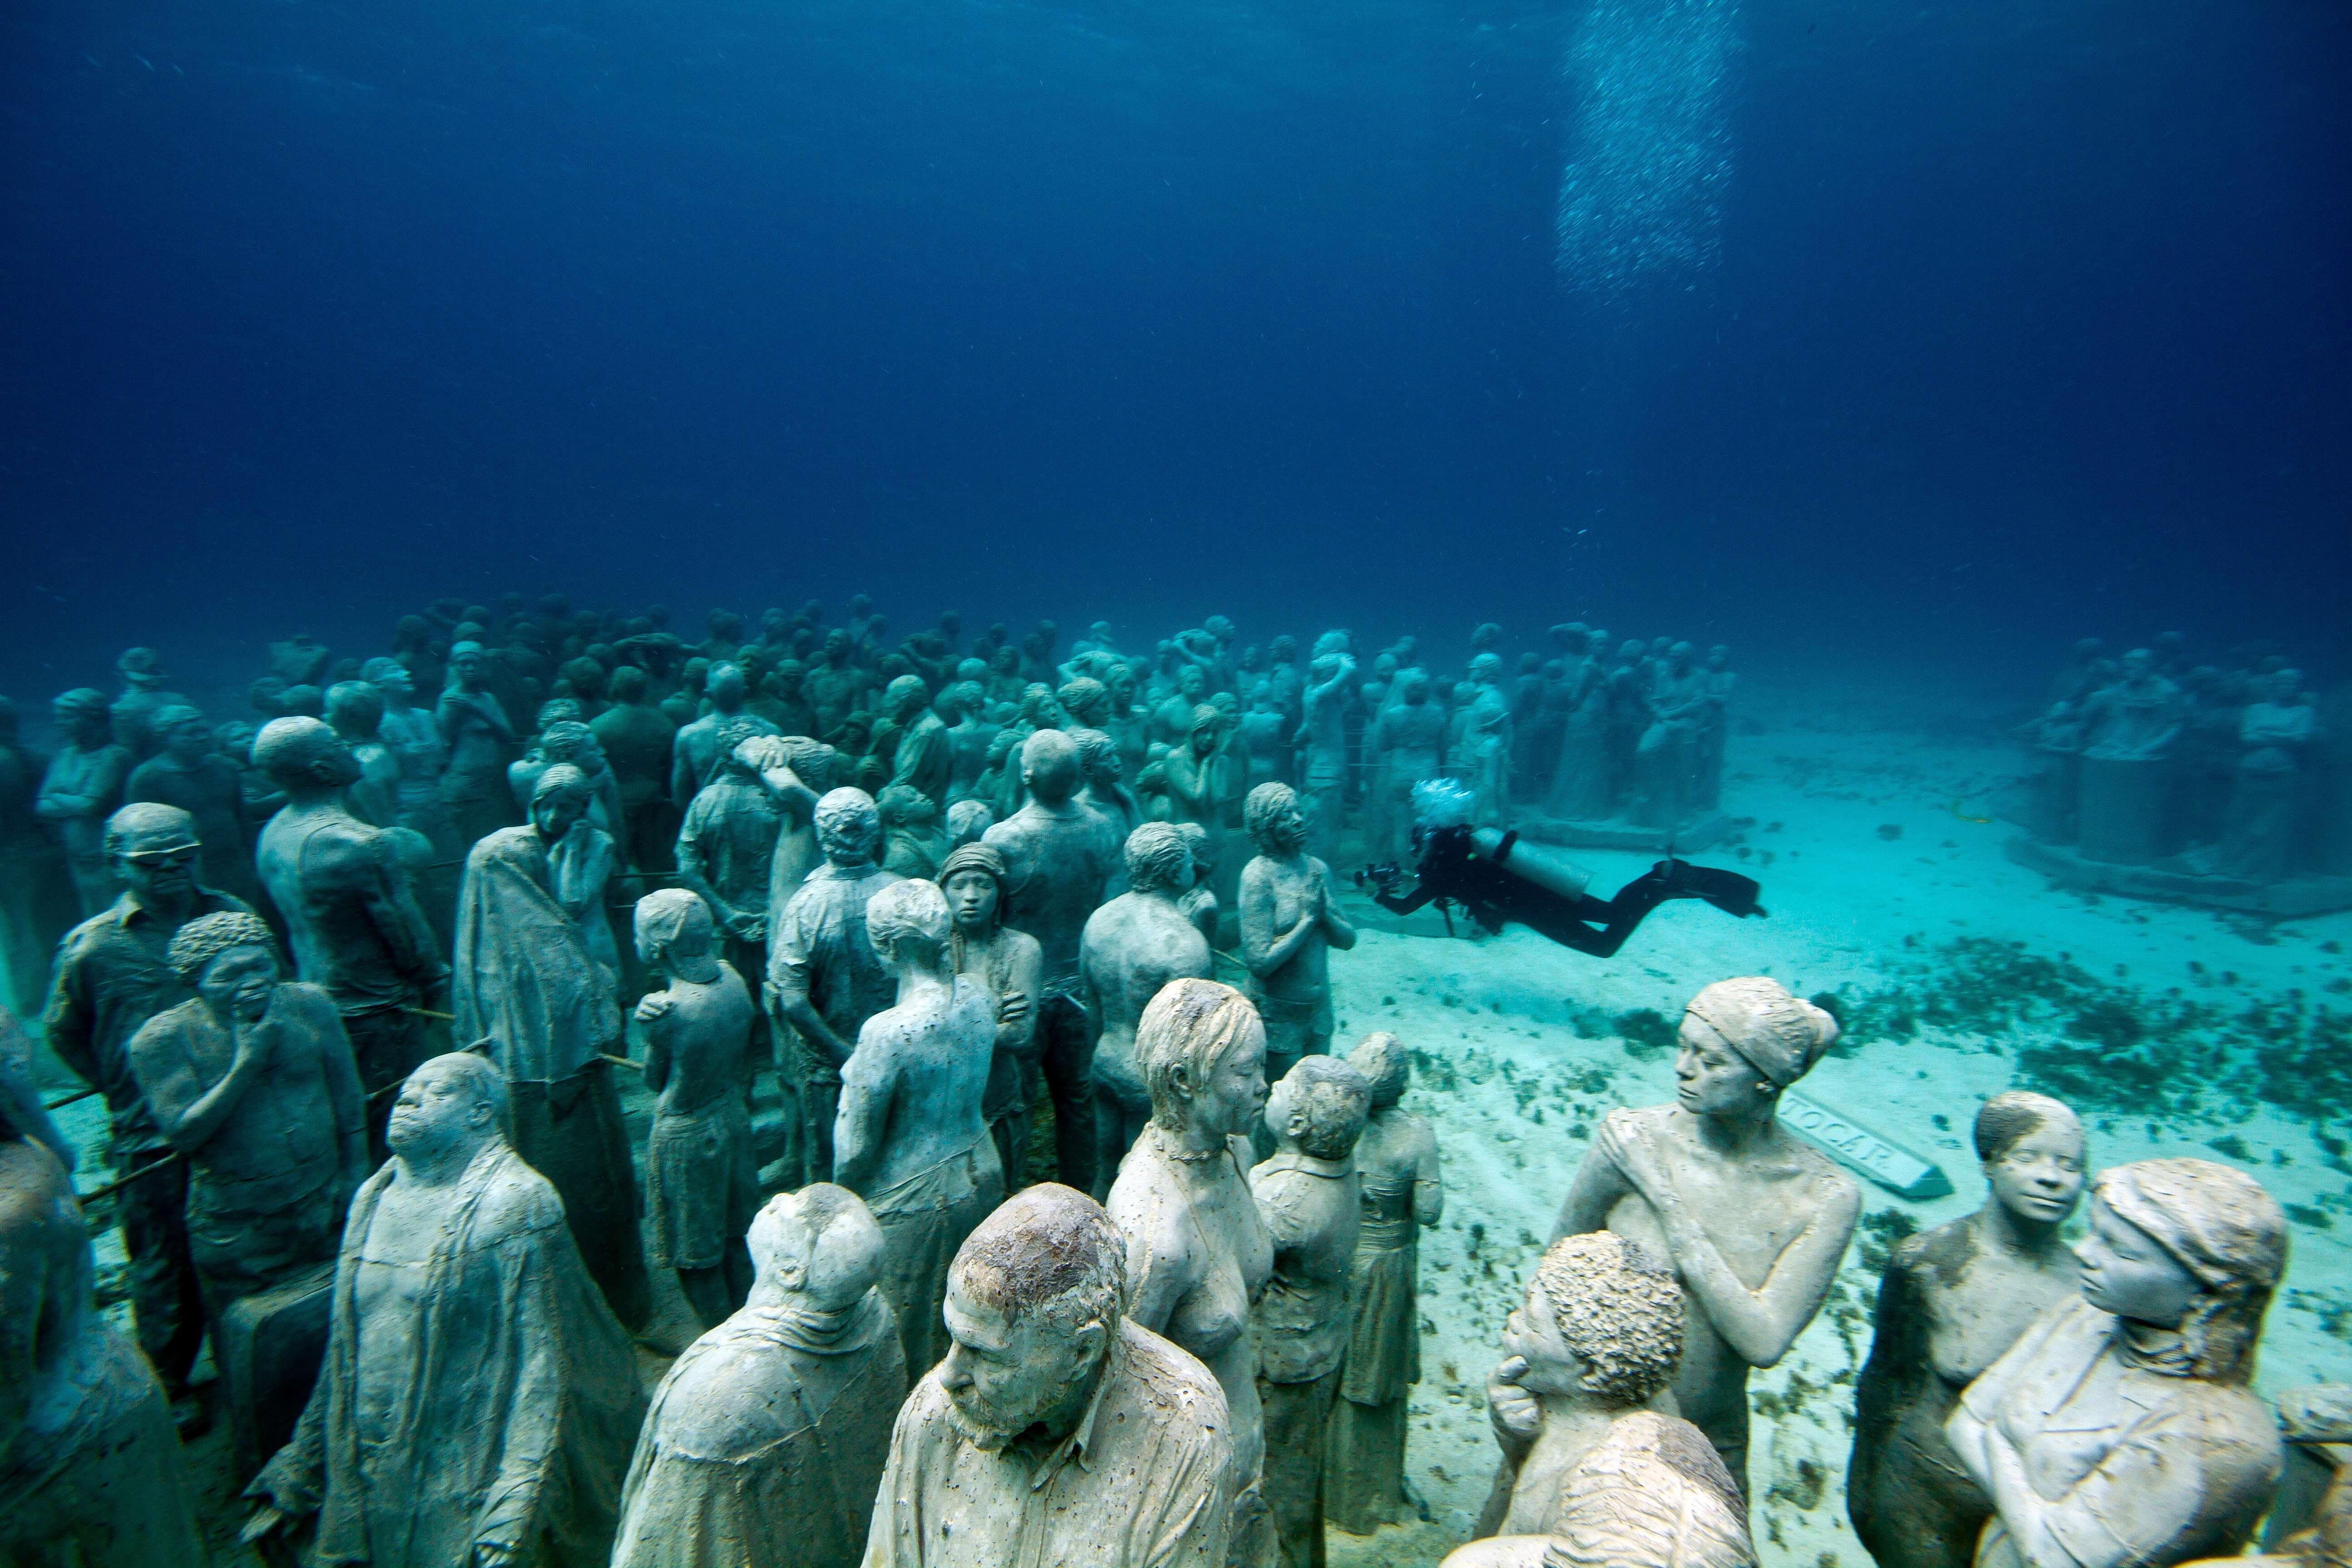 Путешествие на дне океана. Канкун Мексика подводный музей. Канкун музей подводных скульптур. Музей подводных скульптур, Канкун, Мексика. Подводный музей скульптур в Канкуне.